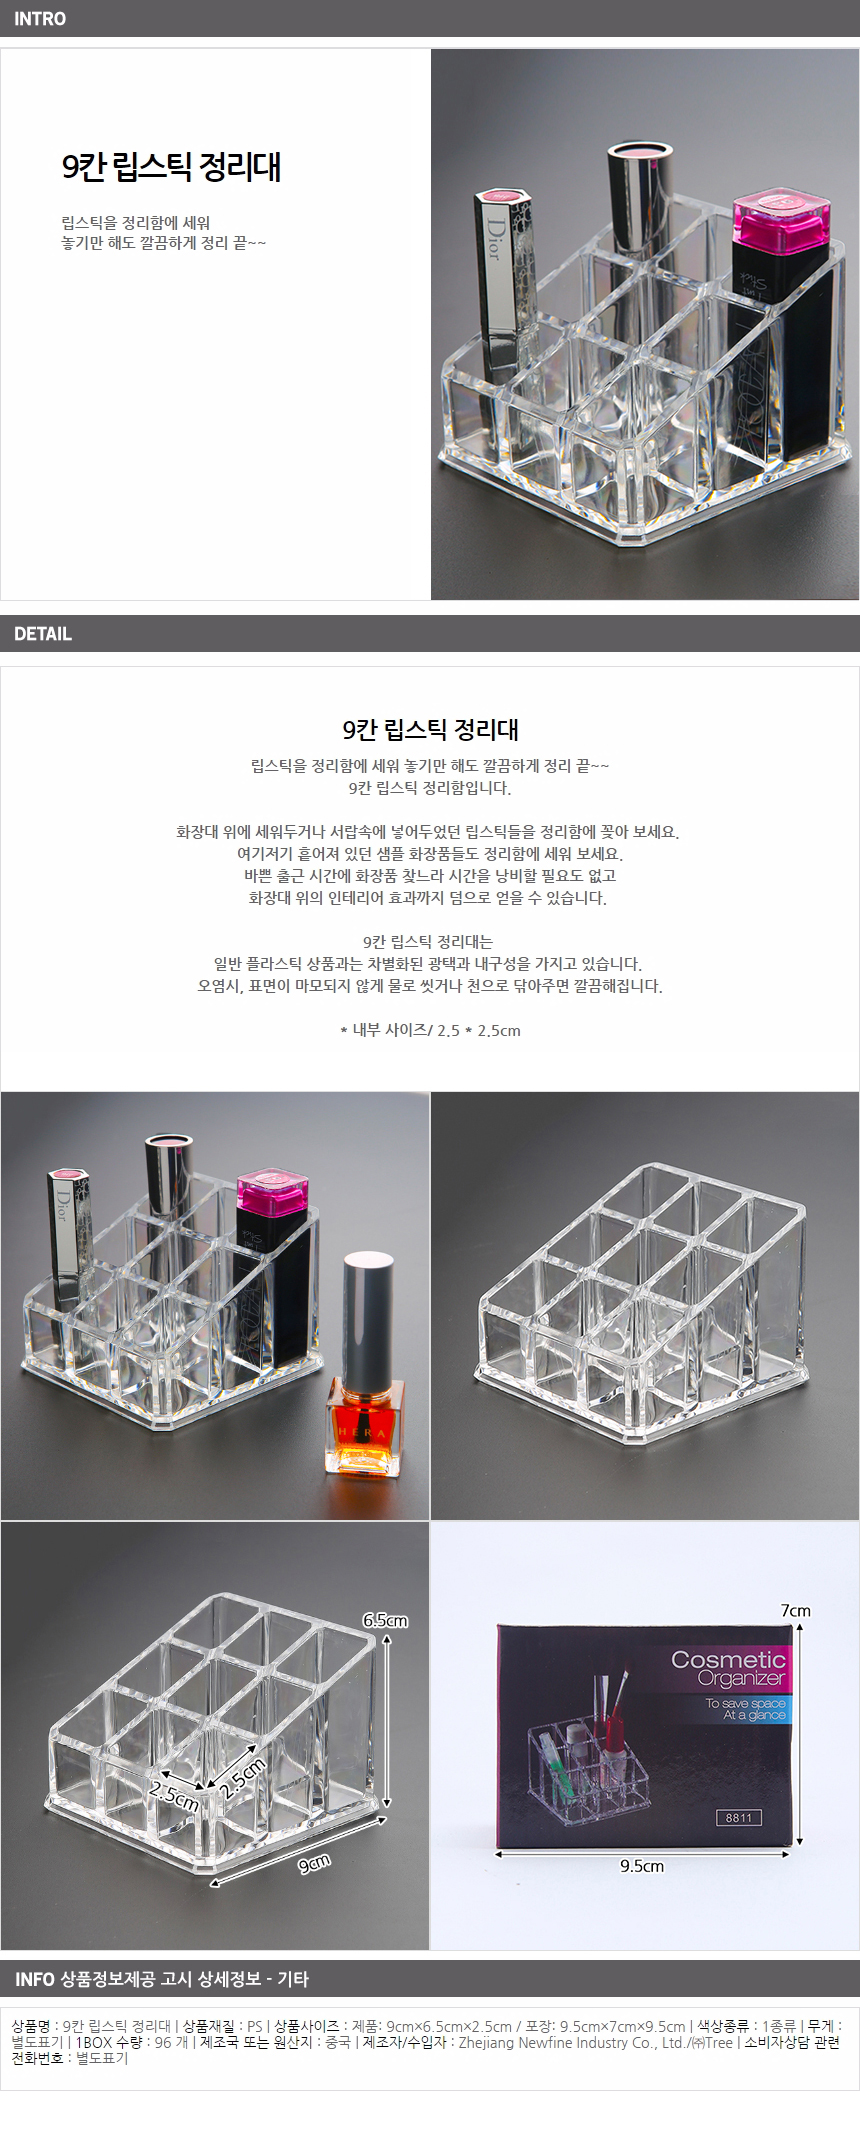 9칸 투명 립스틱정리함/뷰티샵 진열용 매니큐어정리함